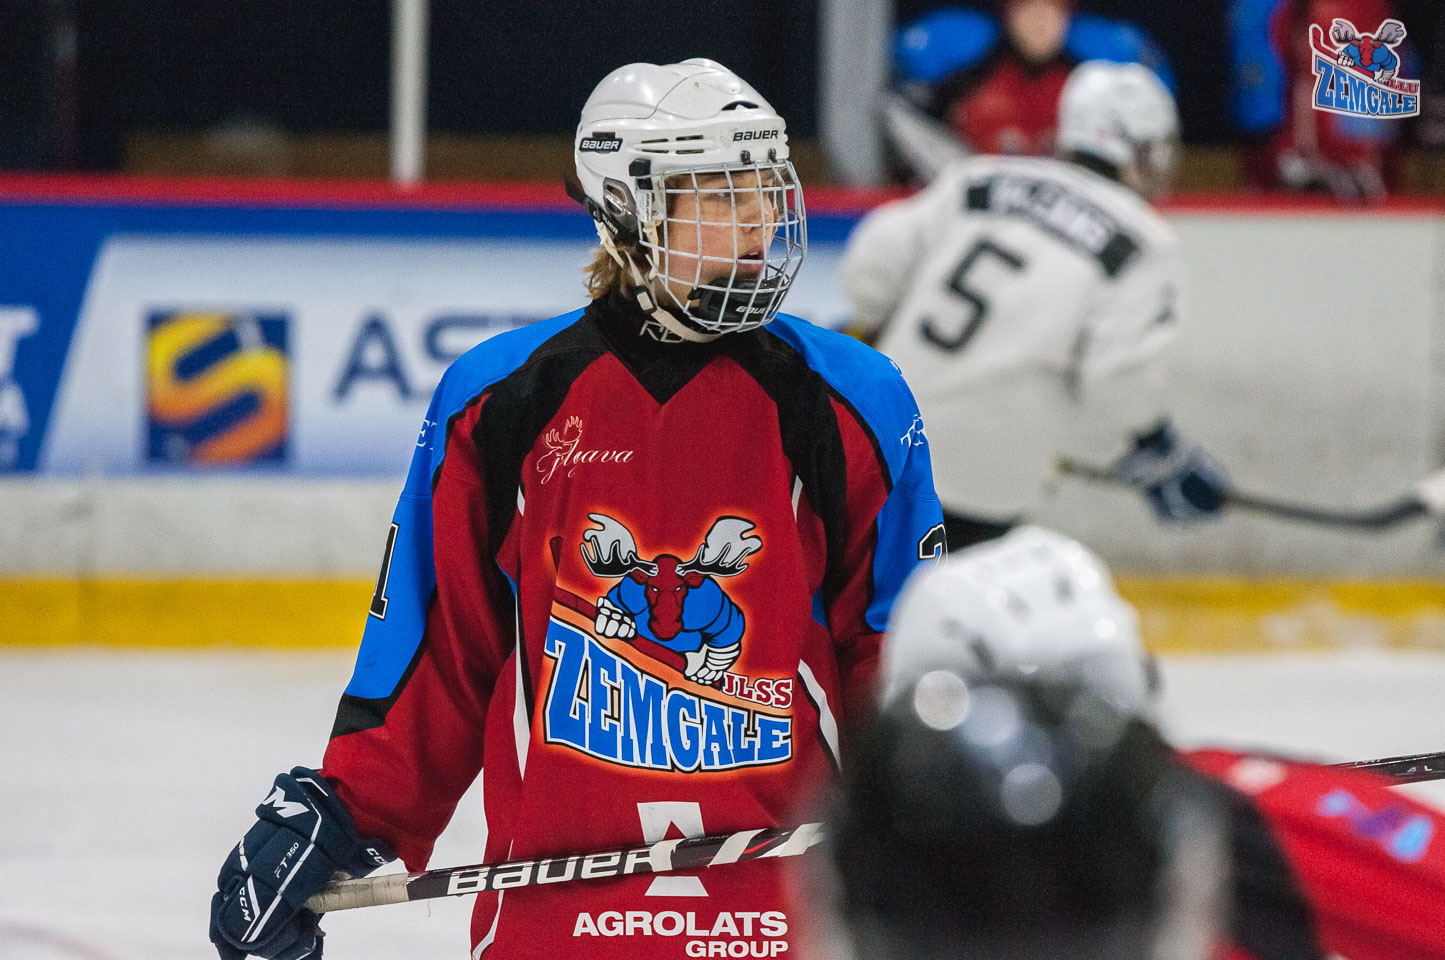 Latvijas bērnu un jauniešu hokeja čempionāta (LBJČH) regulārā čempionāta spēle starp “JLSS U17” un HK “IHS/Prizma” Jelgavas ledus hallē 2020. gada 12. janvārī | Foto: Ruslans Antropovs / rusantro.com